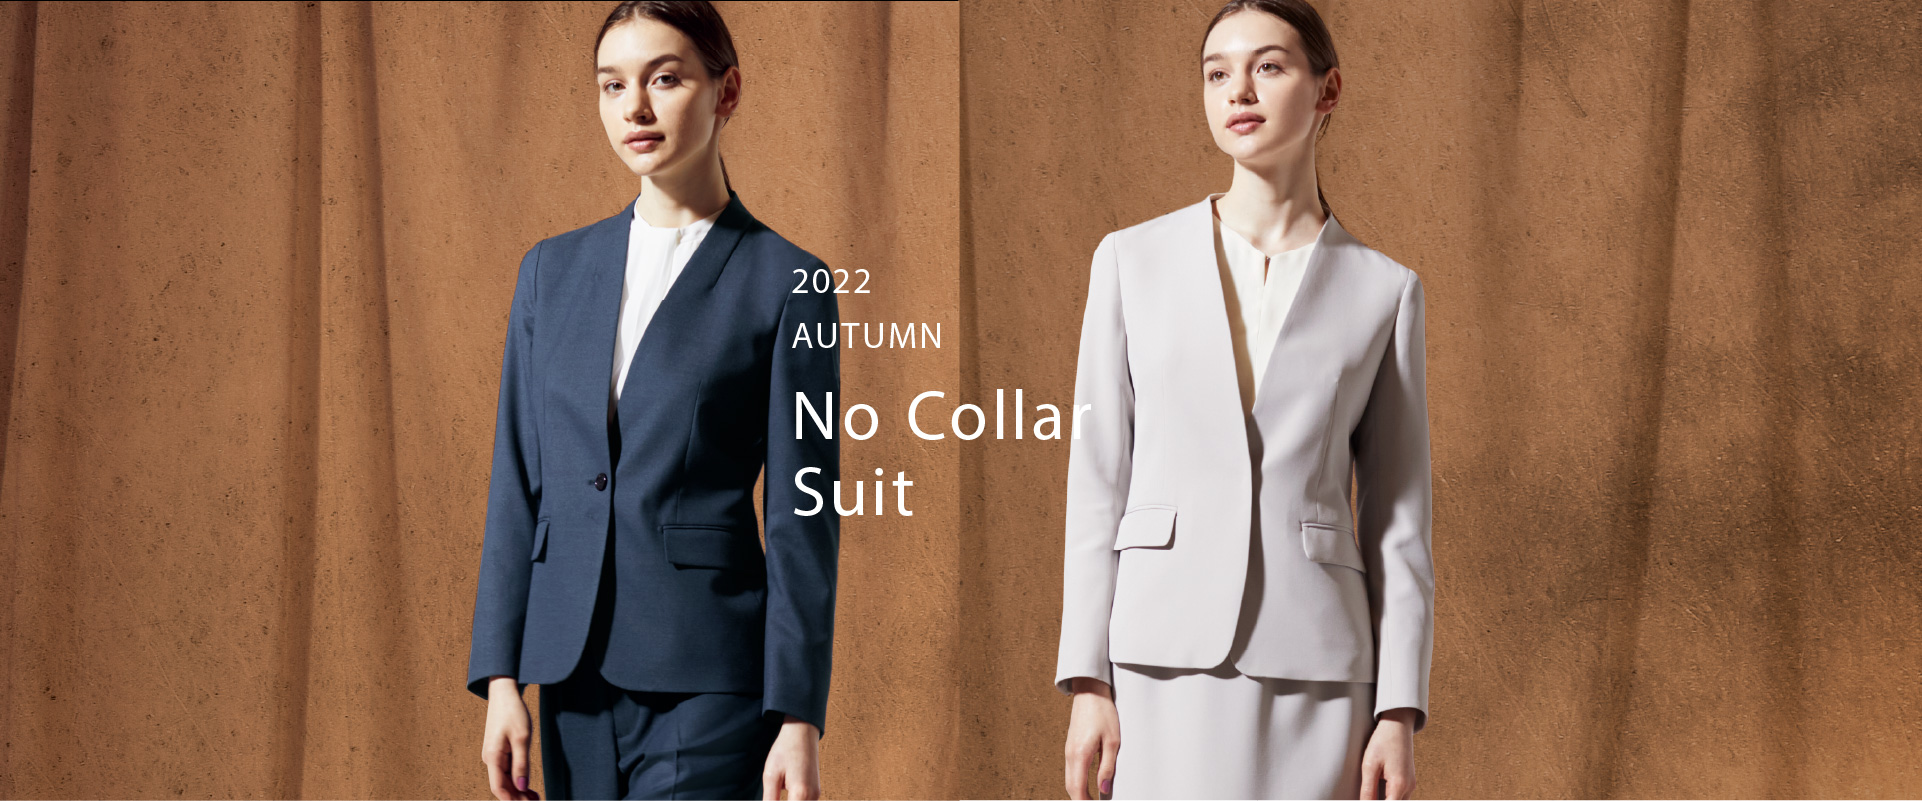 2022 AUTUMN No Collar Suit